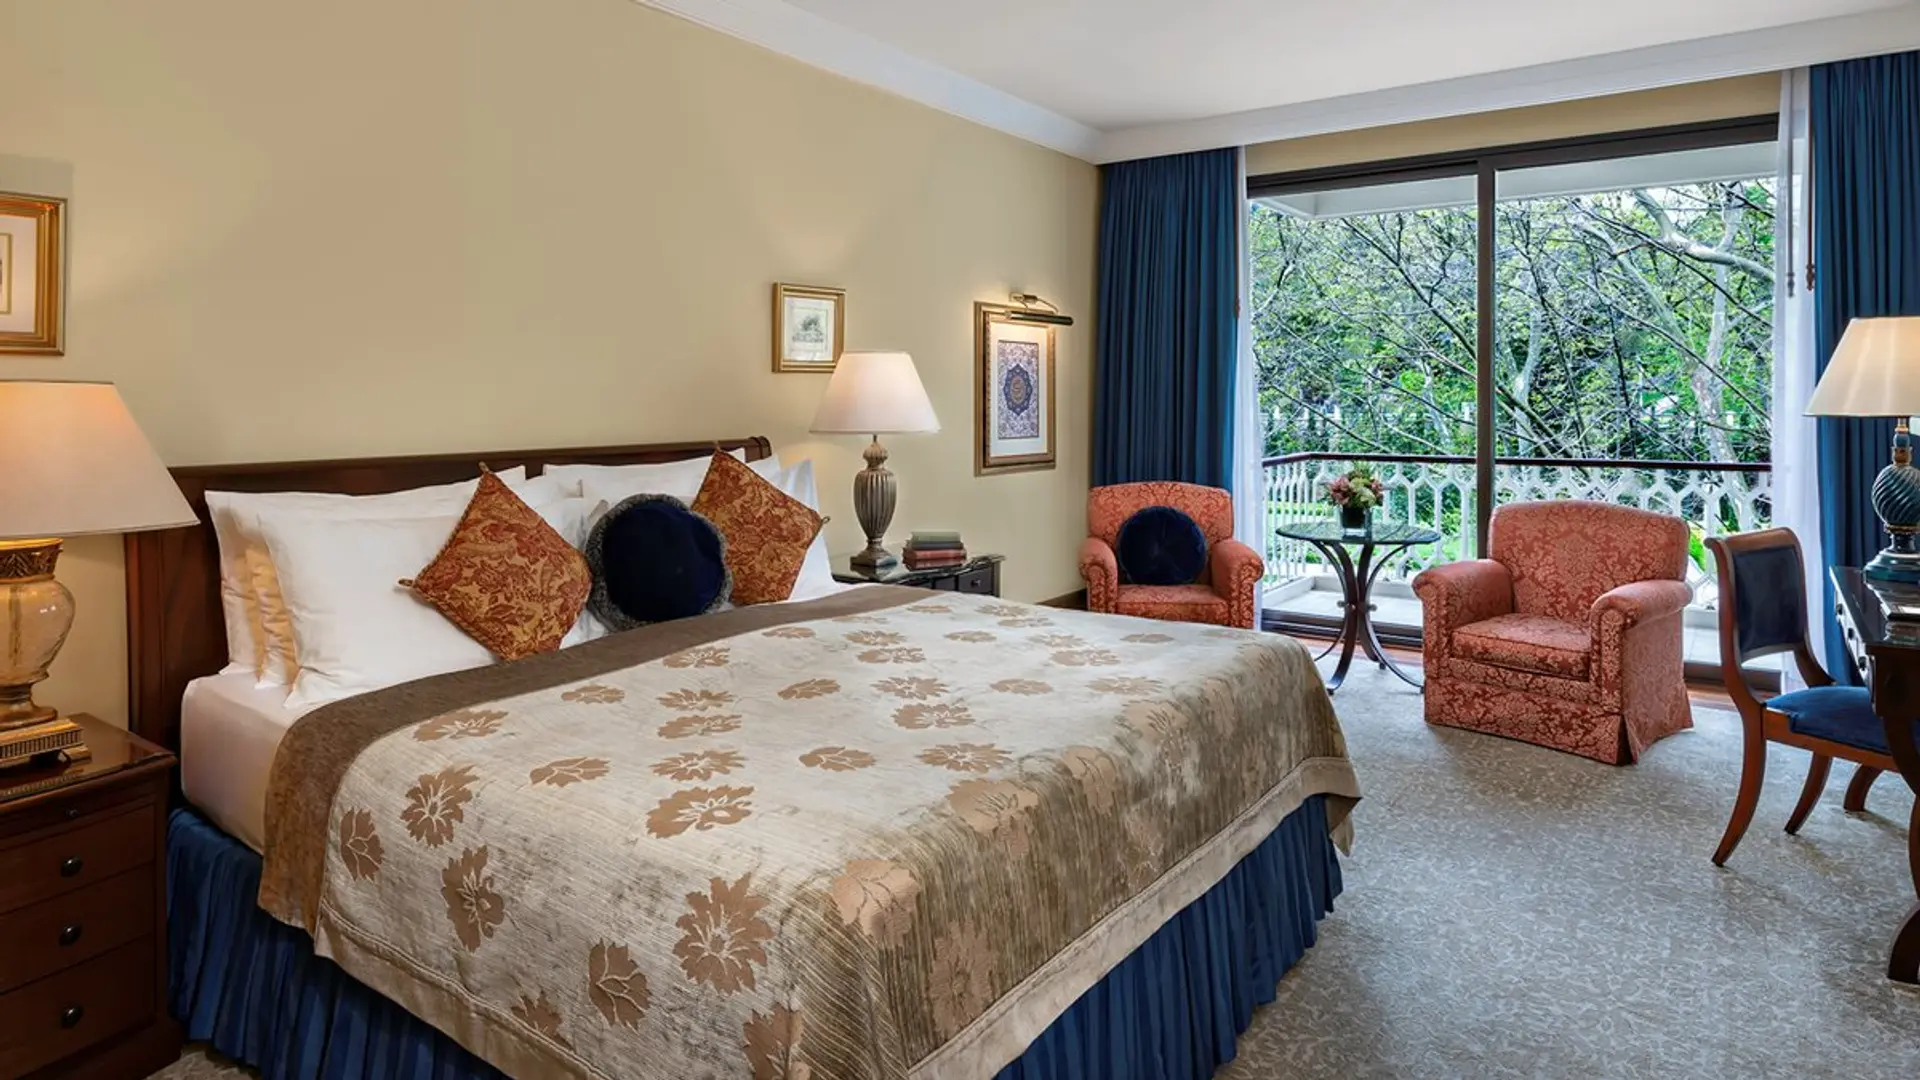 Hotel review Accommodation' - Çırağan Palace Kempinski Istanbul - 0